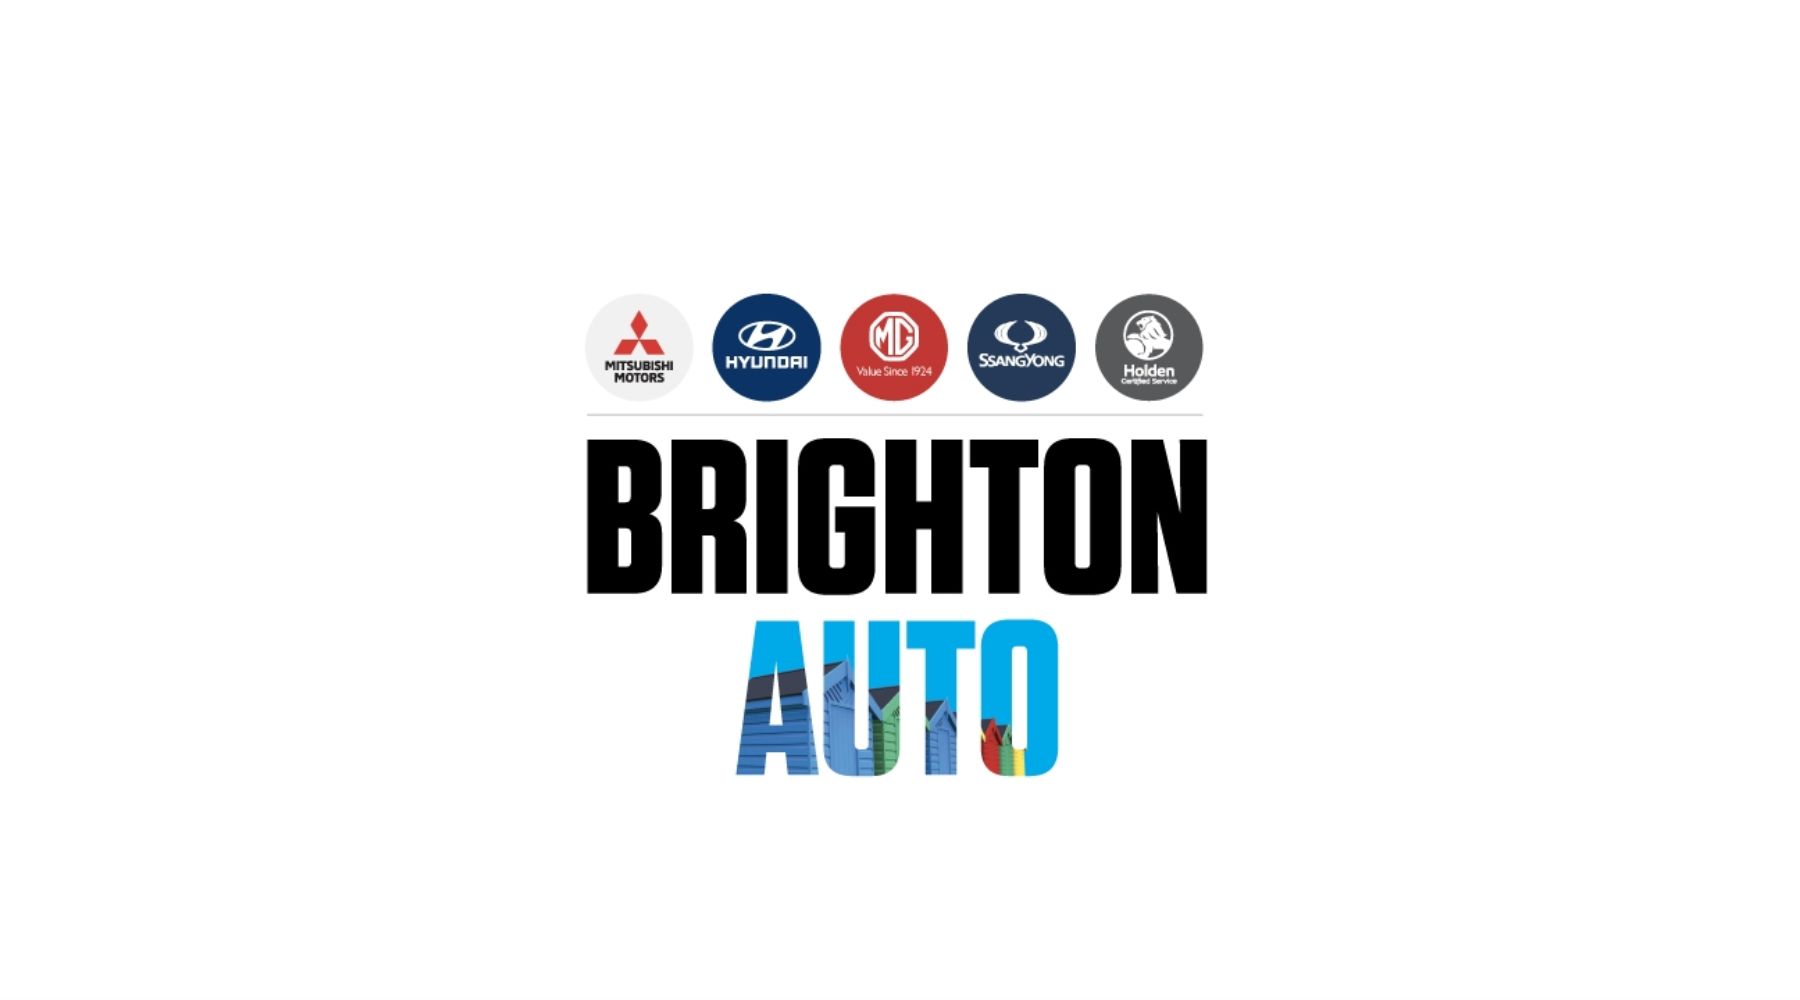 Brighton Auto Cleans Up at Mitsubishi Awards